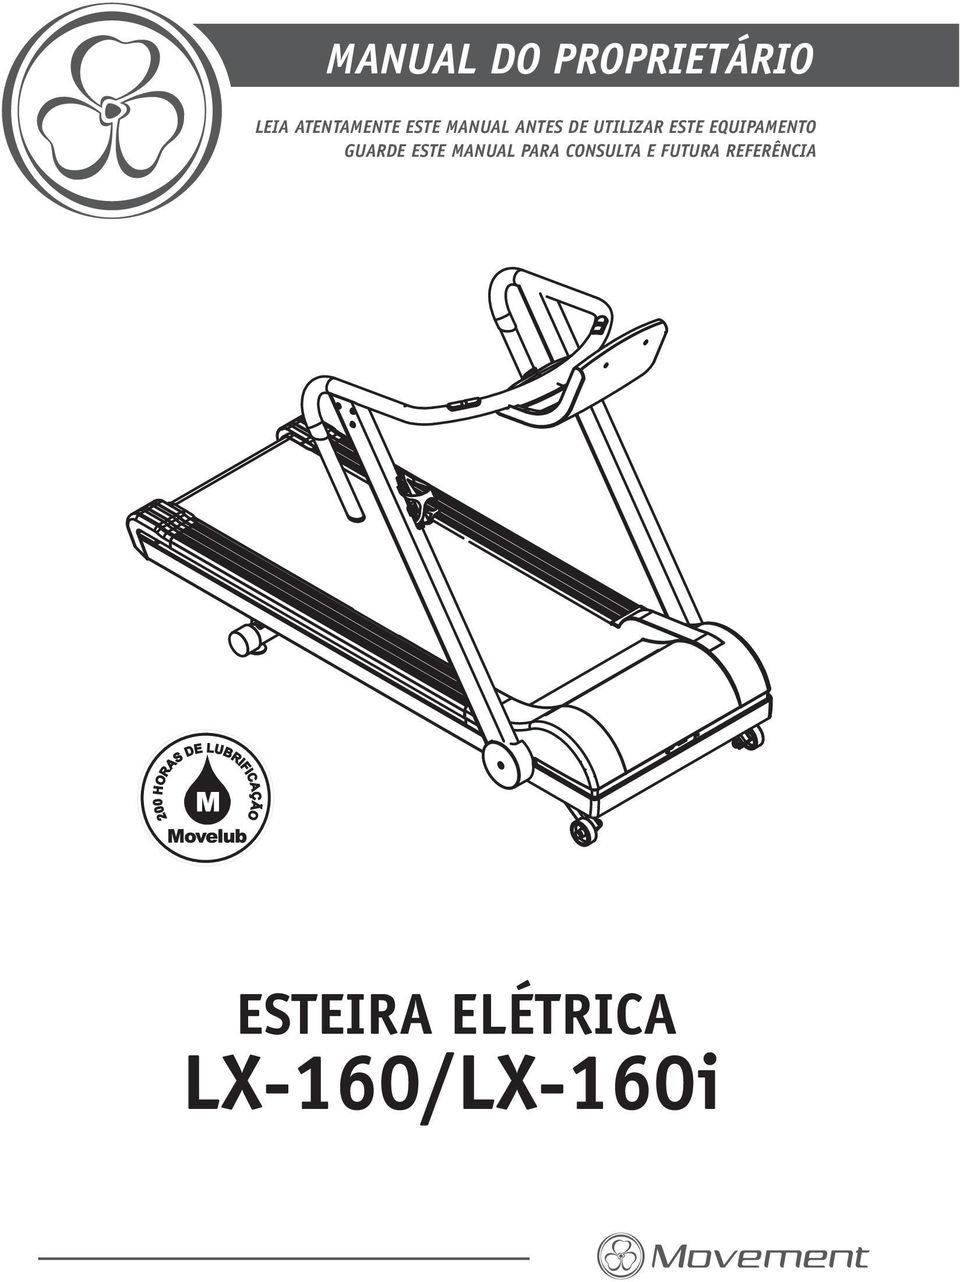 LX-160/LX-160i ESTEIRA ELÉTRICA MANUAL DO PROPRIETÁRIO - PDF Free Download